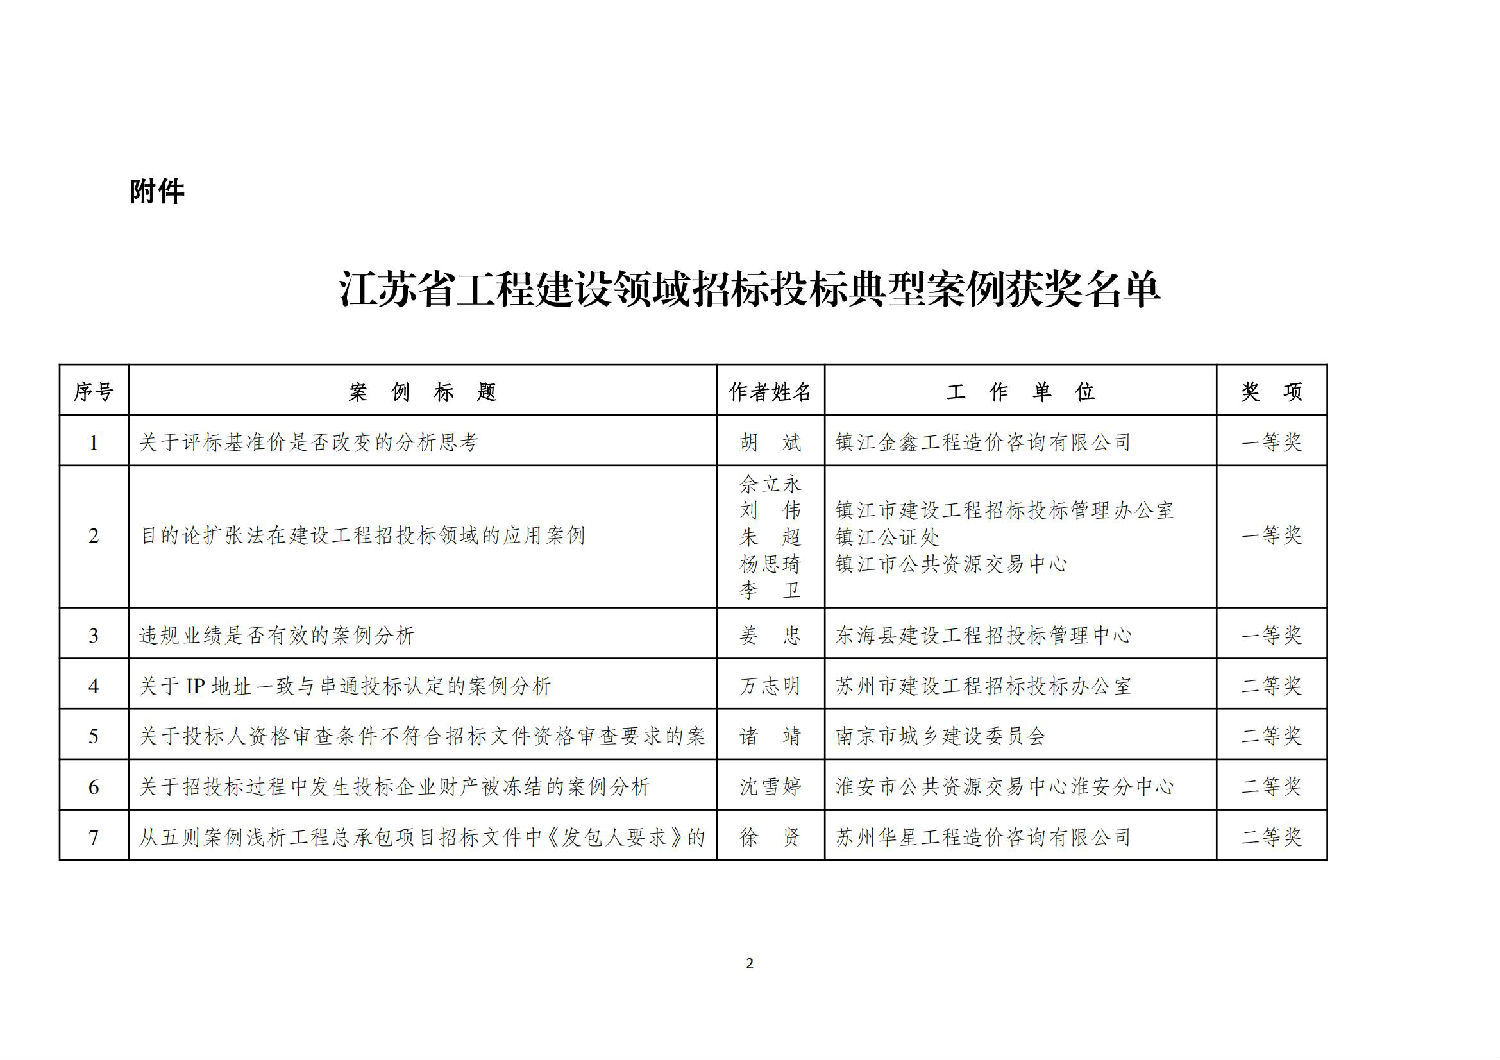 关于江苏省工程建设领域招标投标典型案例评选结果的公示 (1)_01.jpg